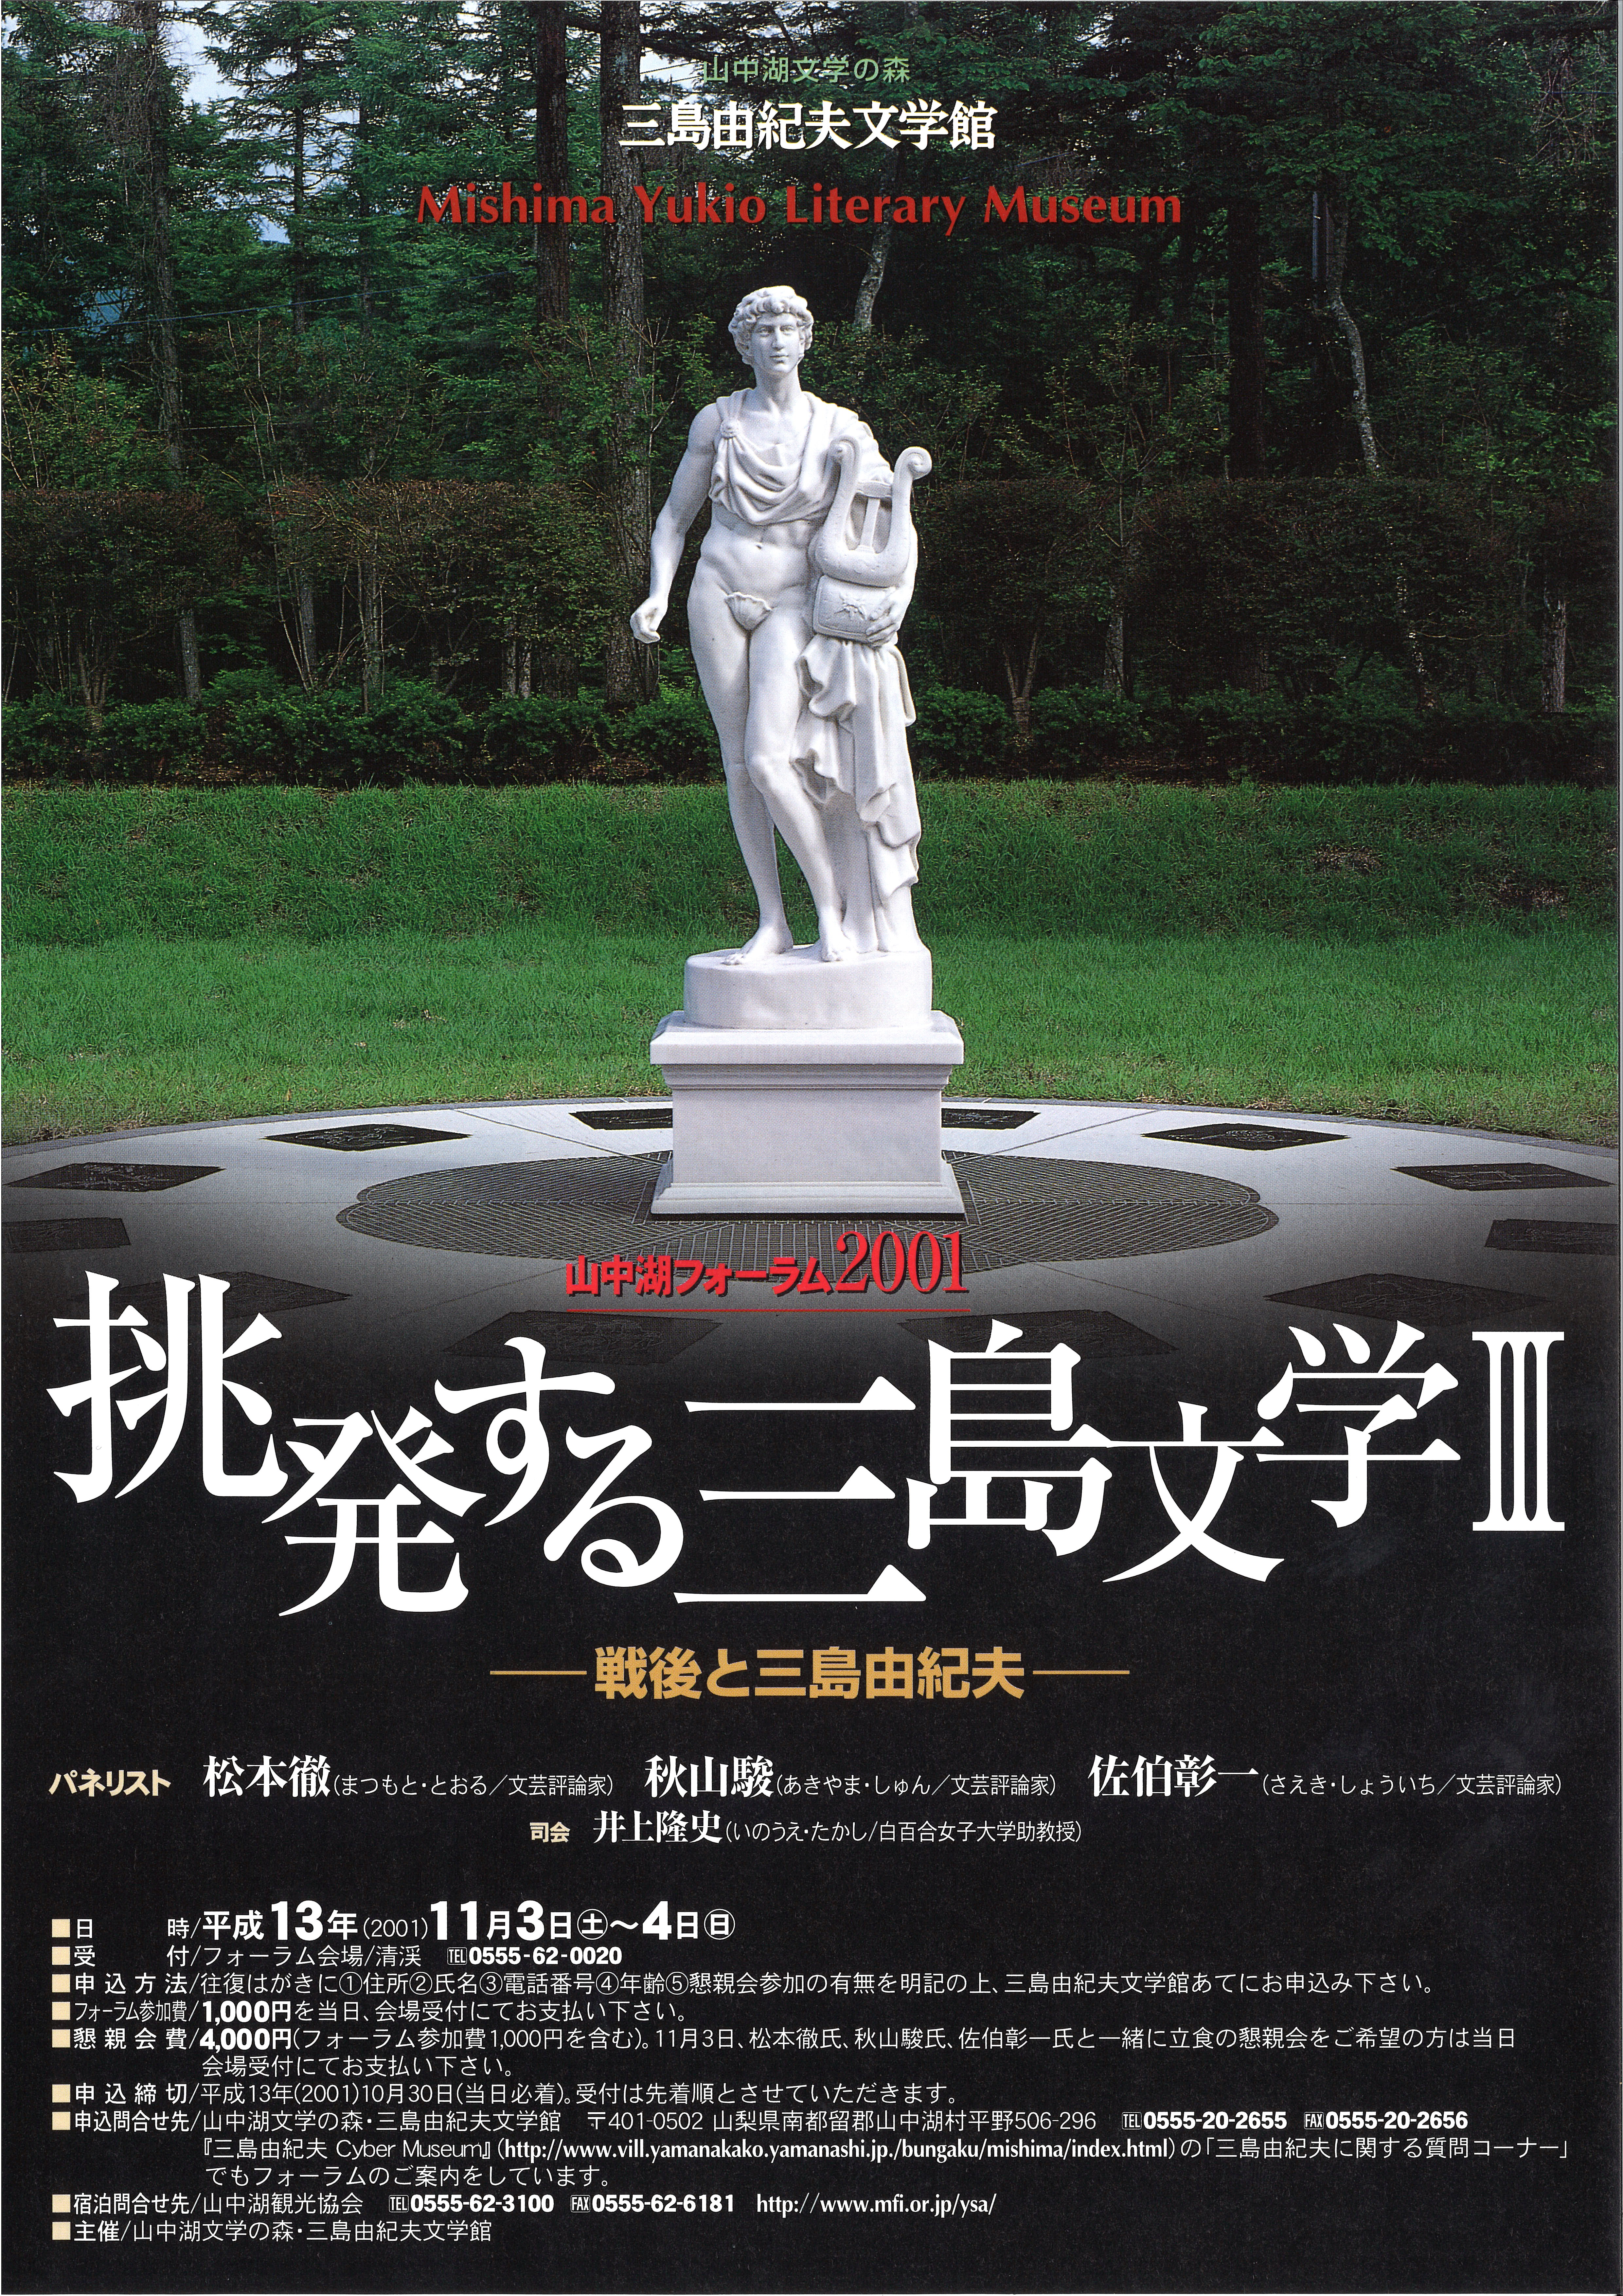 山中湖フォーラム2001 「挑発する三島文学 III ―戦後と三島由紀夫―」